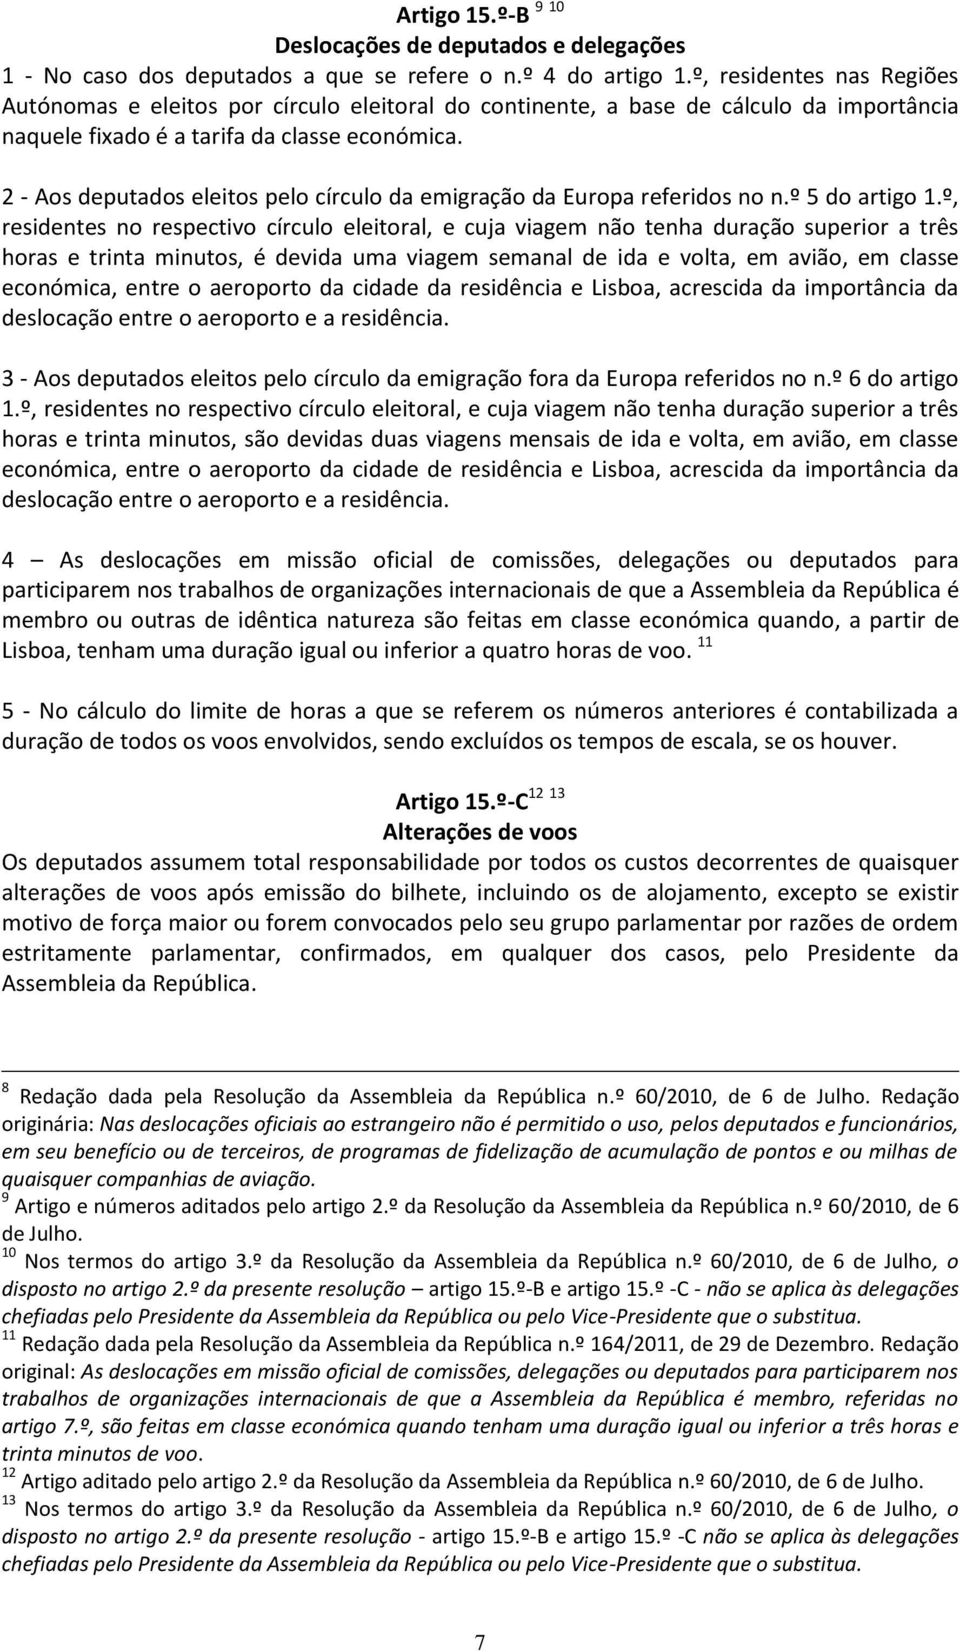 2 - Aos deputados eleitos pelo círculo da emigração da Europa referidos no n.º 5 do artigo 1.